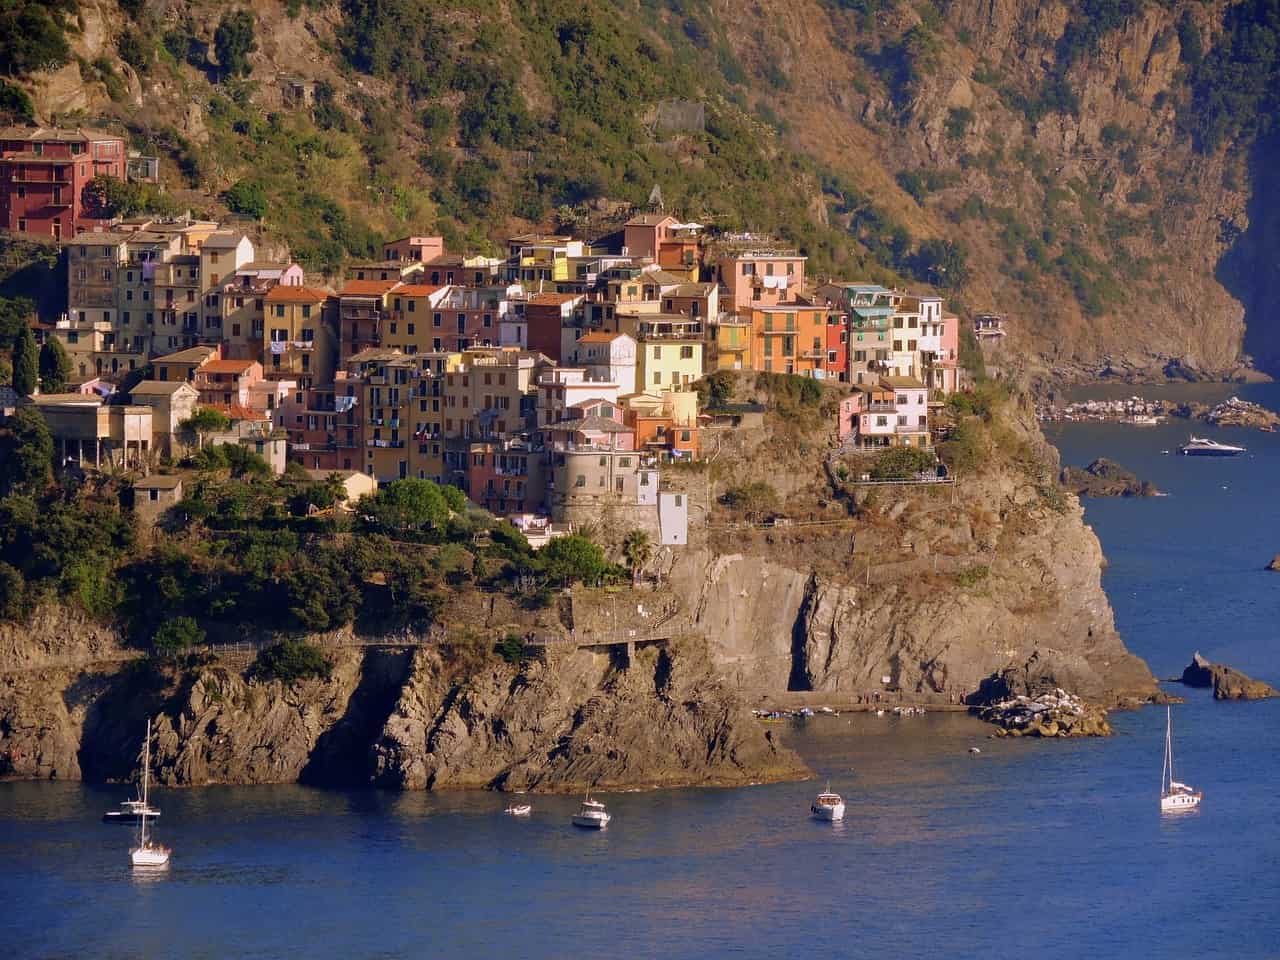 Corniglia in Cinque Terre, Italy